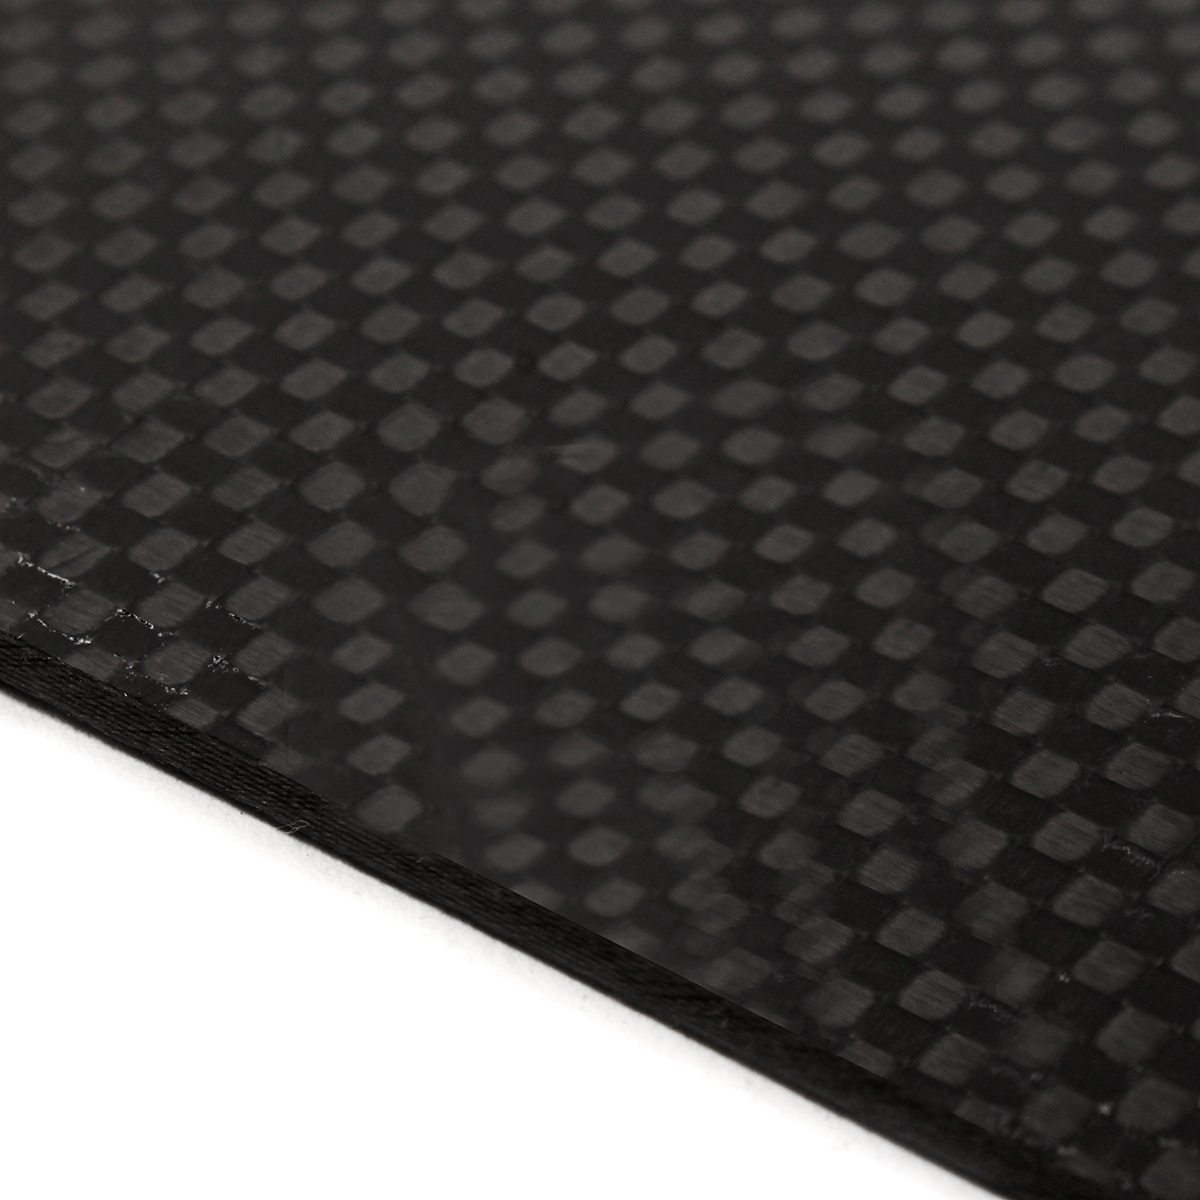 200x250x05-2mm-Plain-Weave-3K-Carbon-Fiber-Plate-Panel-Sheet-Tabby-Matt-Surface-Board-1332224-5